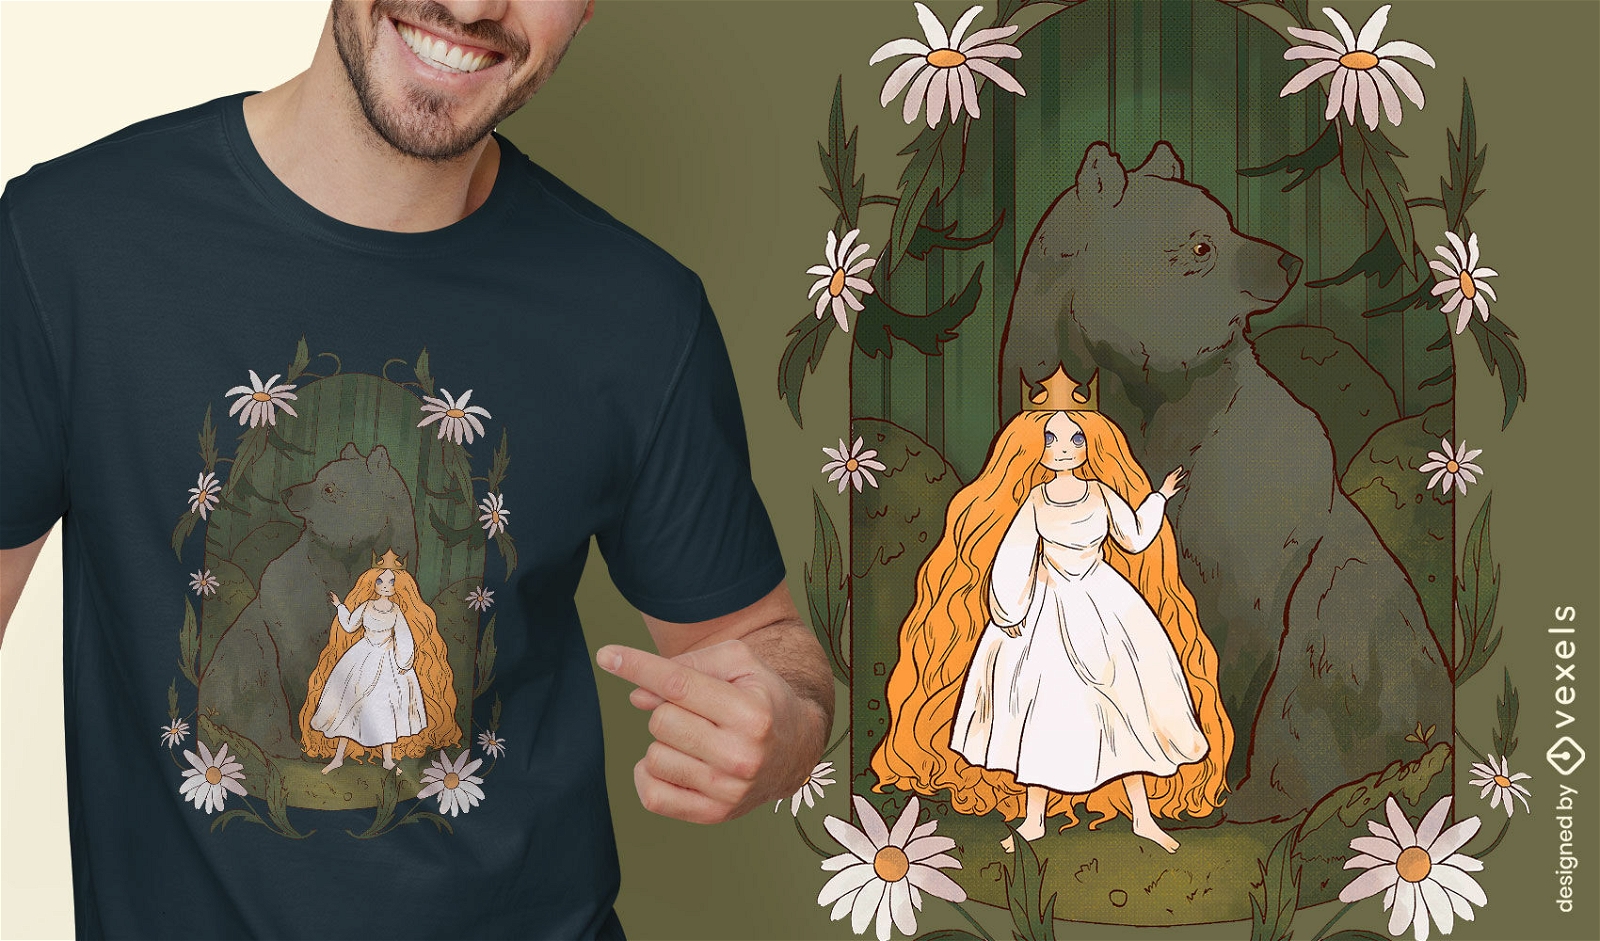 Diseño de camiseta de oso y princesa.